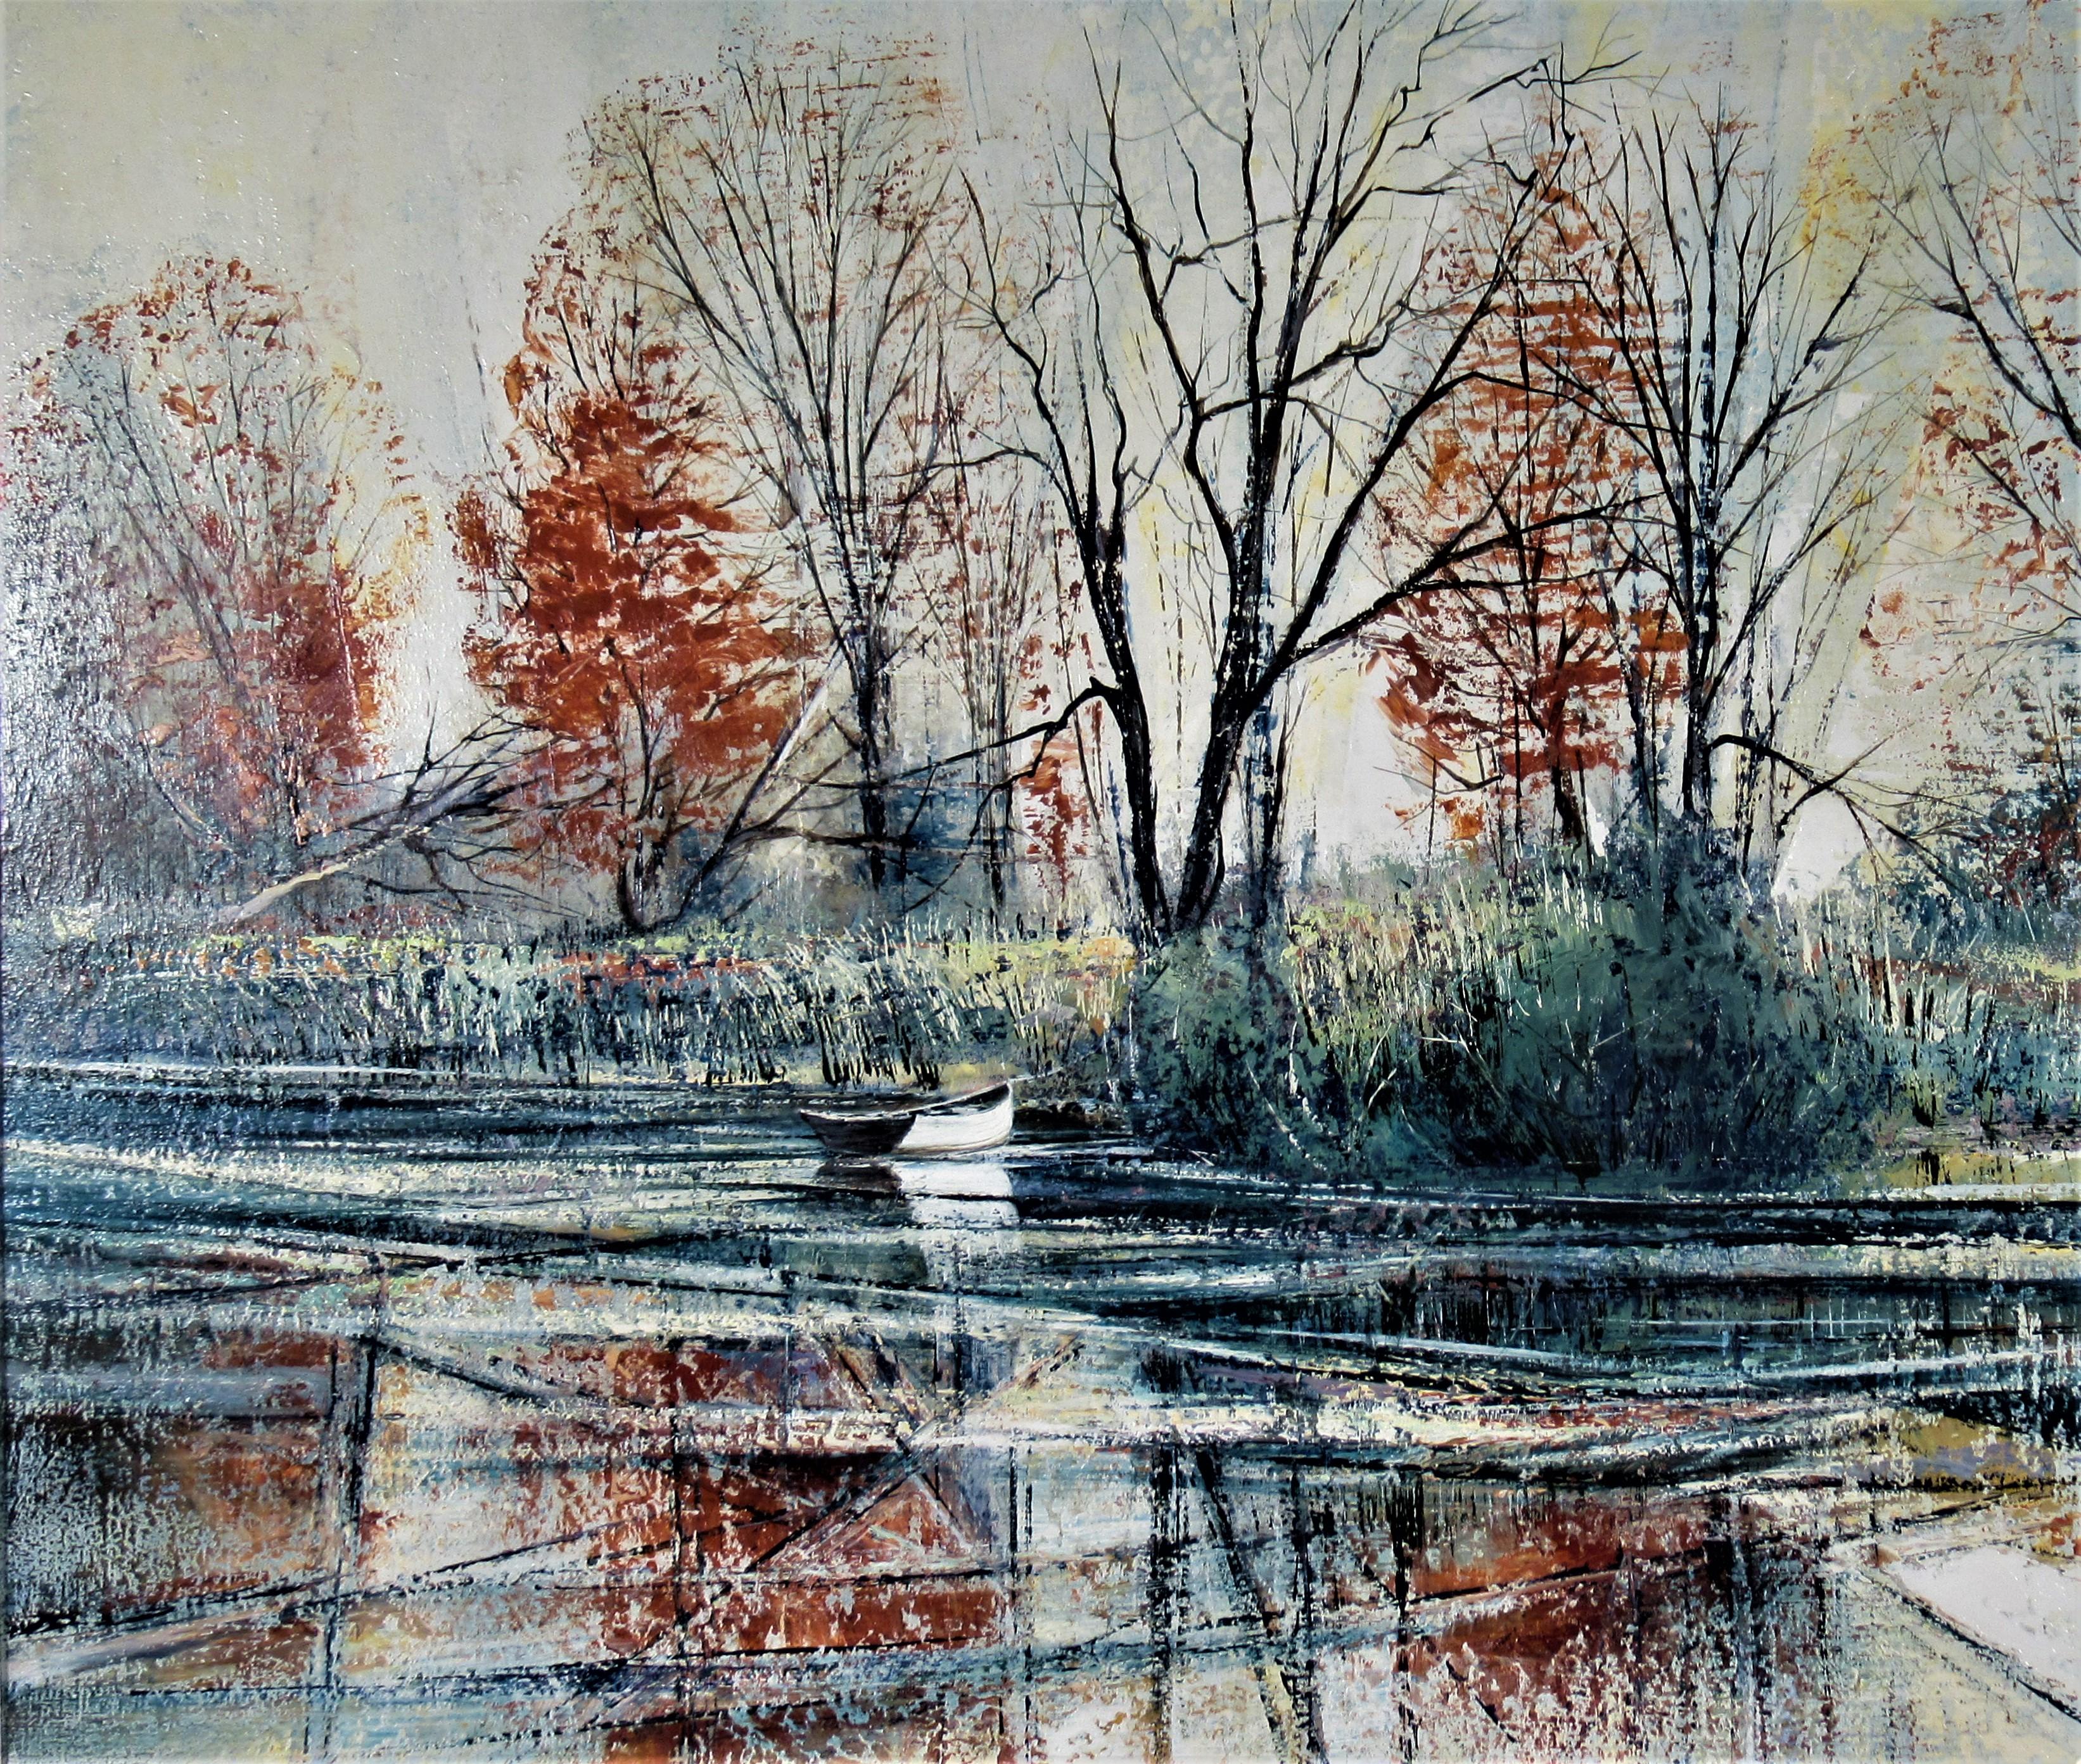 Banque de la rivière Automne - Impressionnisme américain Painting par Richard Ellis Wagner